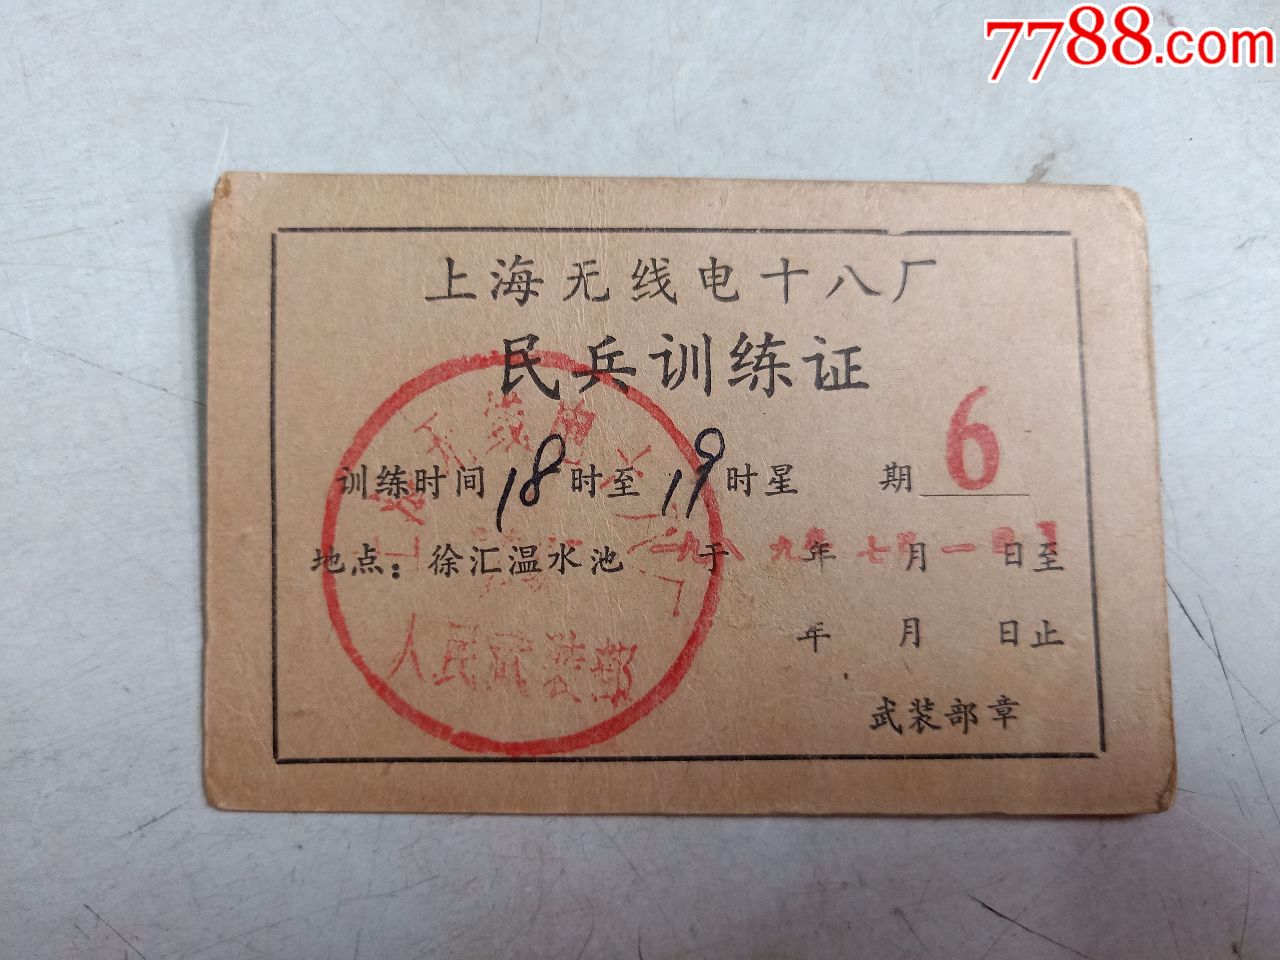 上海无线电十八厂民兵训练证